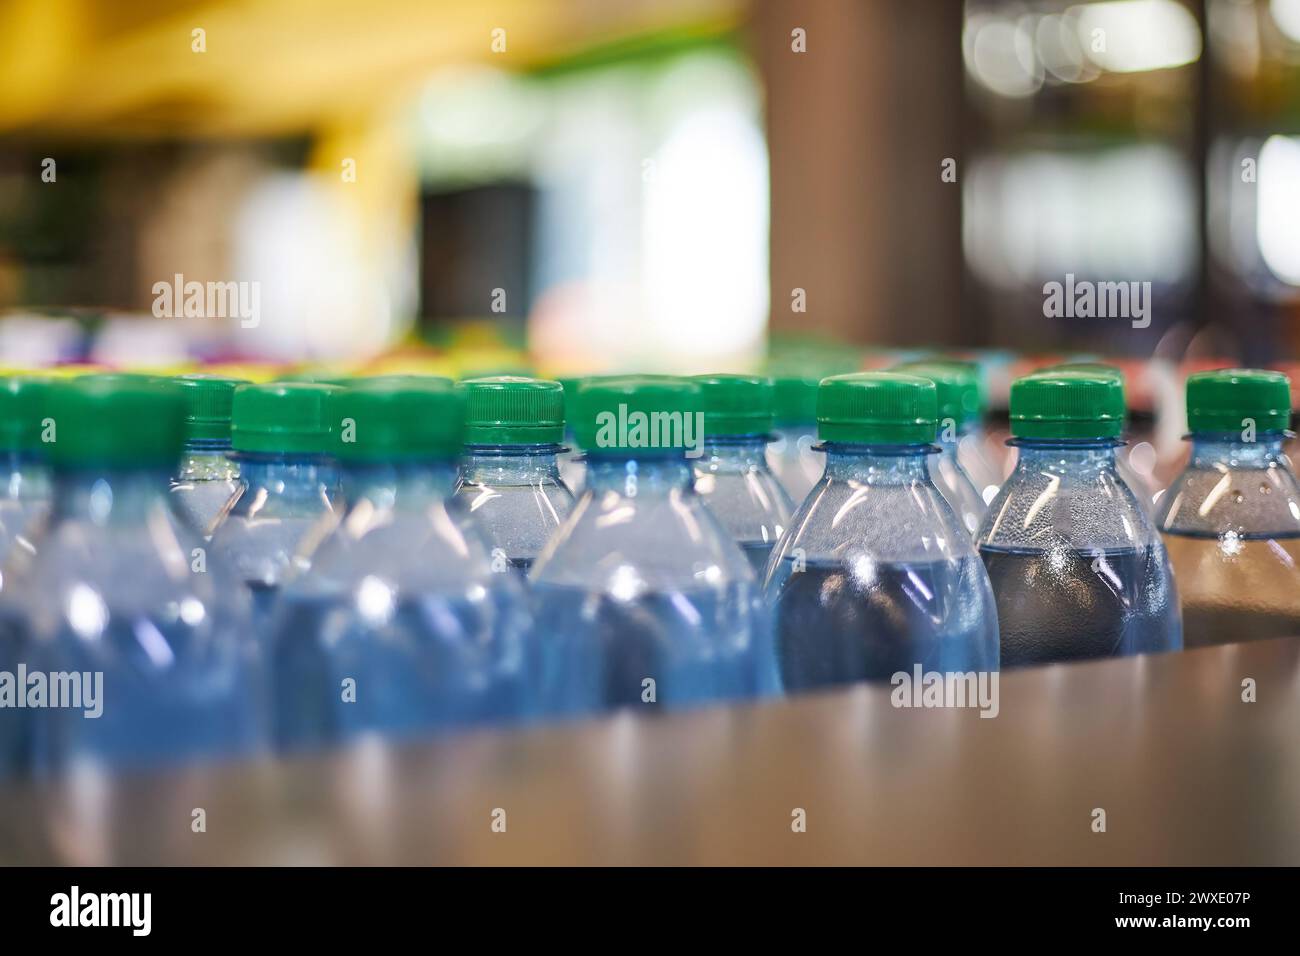 Bottiglie in plastica blu da mezzo litro di acqua minerale di piccolo volume con tappo verde in negozio, scaffale del supermercato, primo piano. Elevato consumo di plastica nella vita di tutti i giorni, ciò che inquina l'ambiente Foto Stock